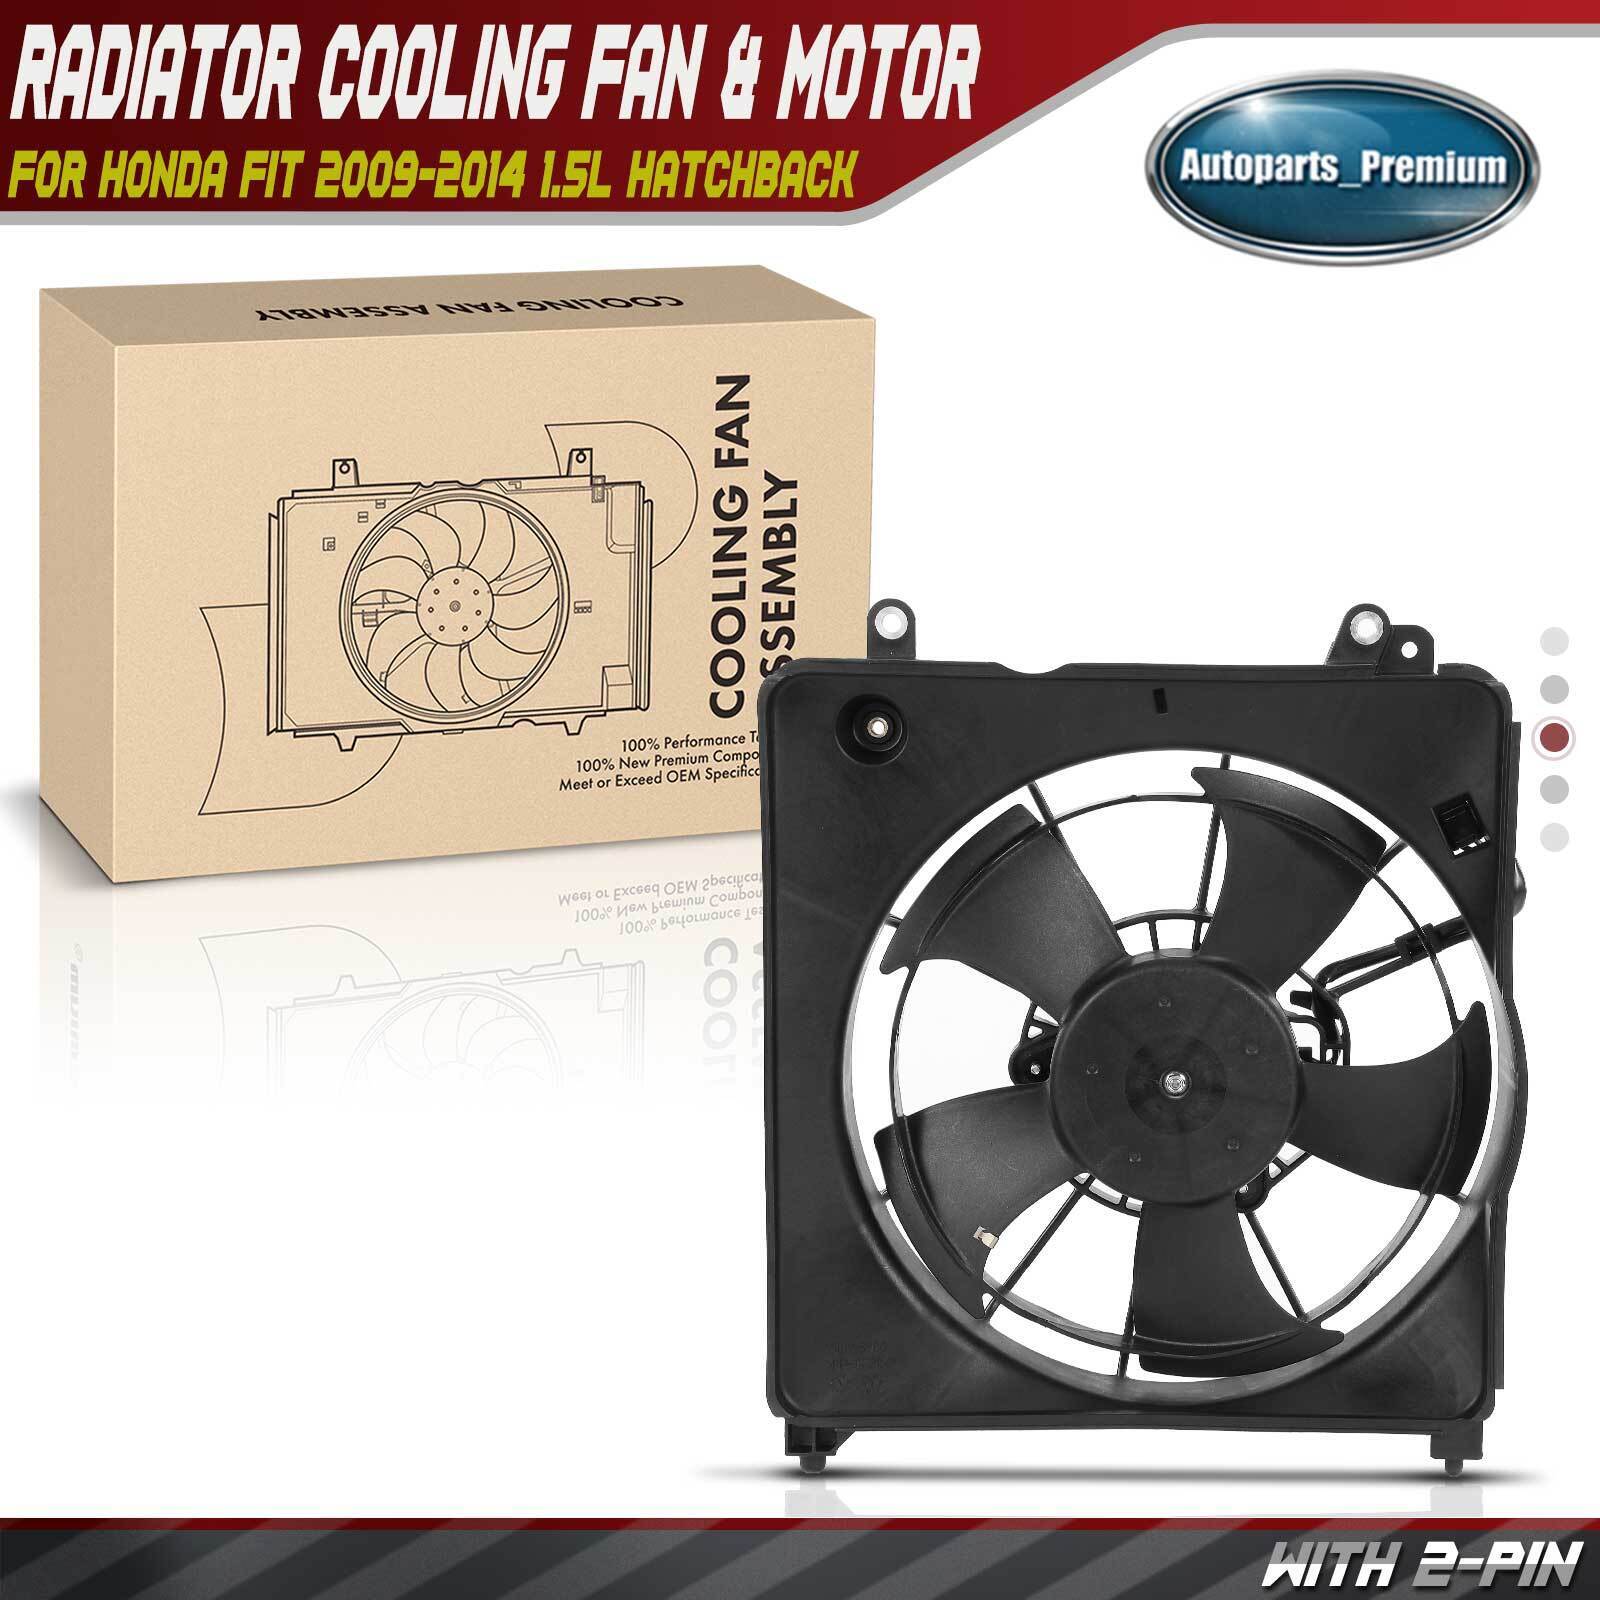 Radiator Cooling Fan w/ Shroud Assembly for Honda Fit 2009-2014 1.5L Hatchback